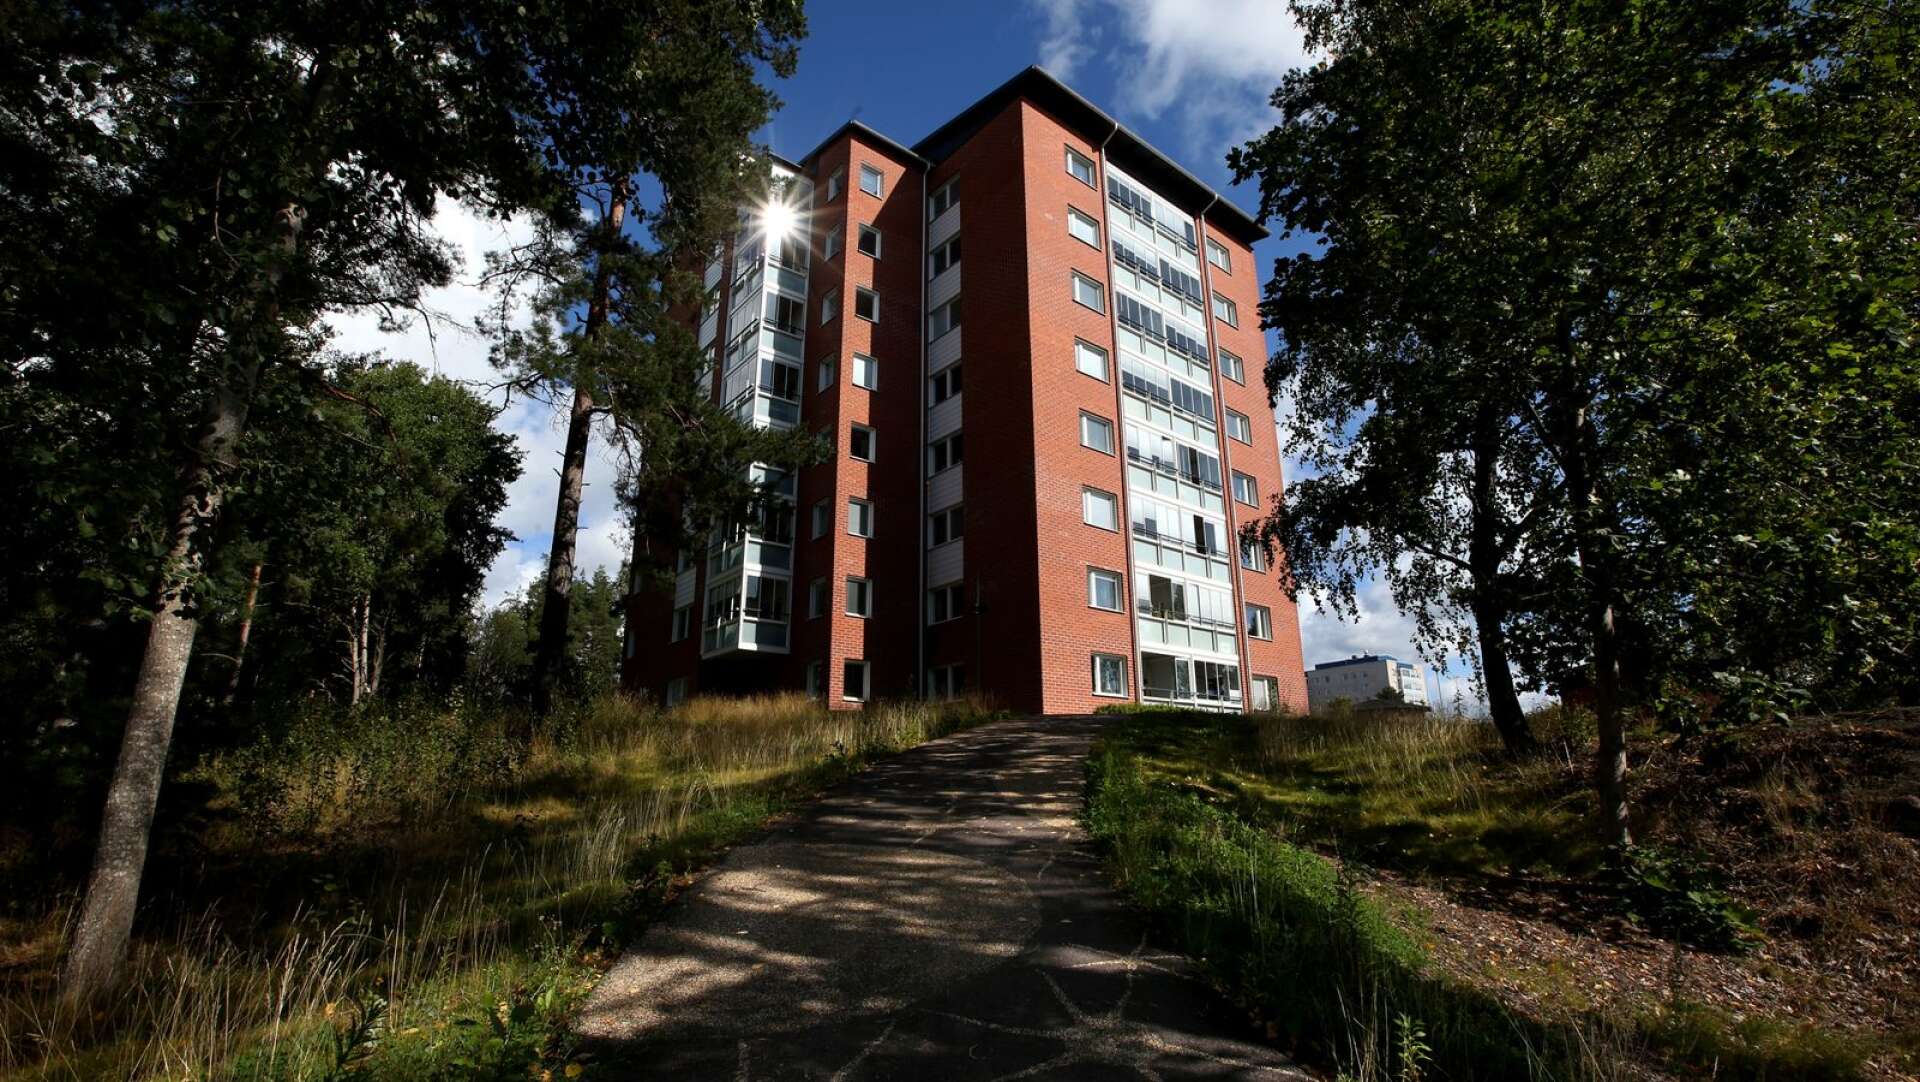 Kommunala KBAB:s hus Lanternan står på Rud i Karlstad. Huset stod färdigt 2015.